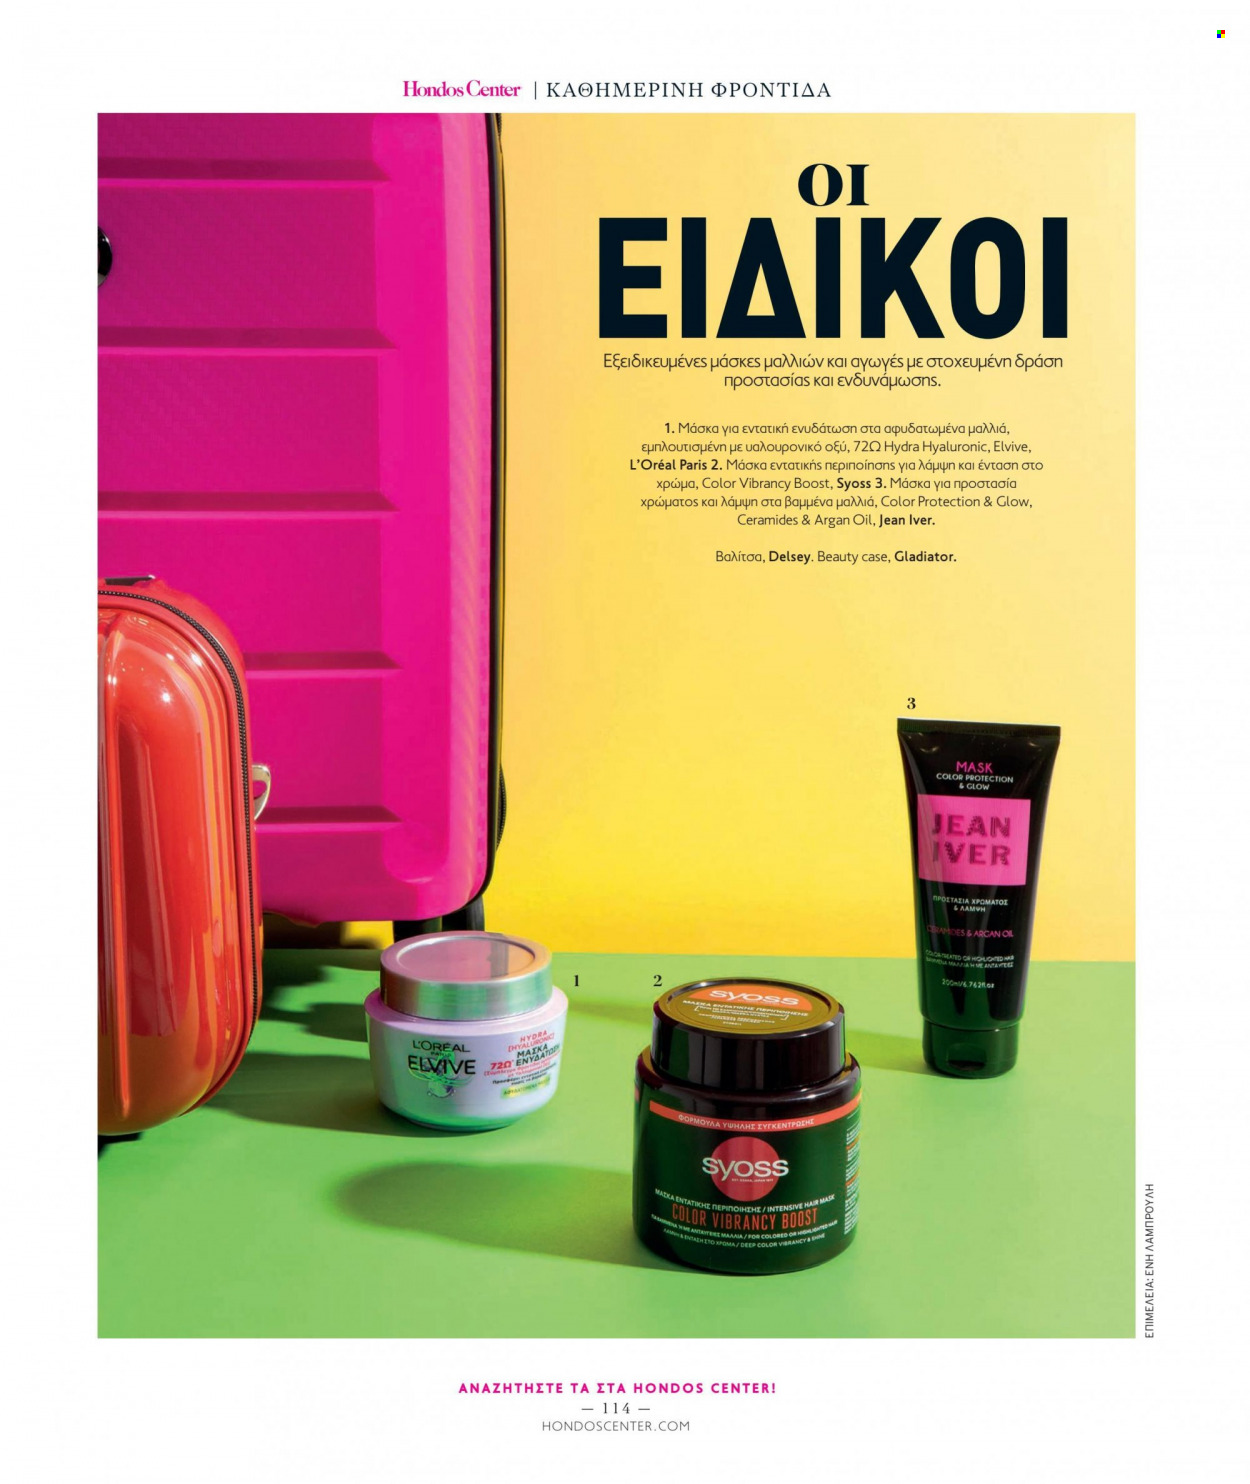 Φυλλάδια Hondos Center - Εκπτωτικά προϊόντα - Elvive, L'Oréal Paris, Syoss, βαλίτσα. Σελίδα 114.